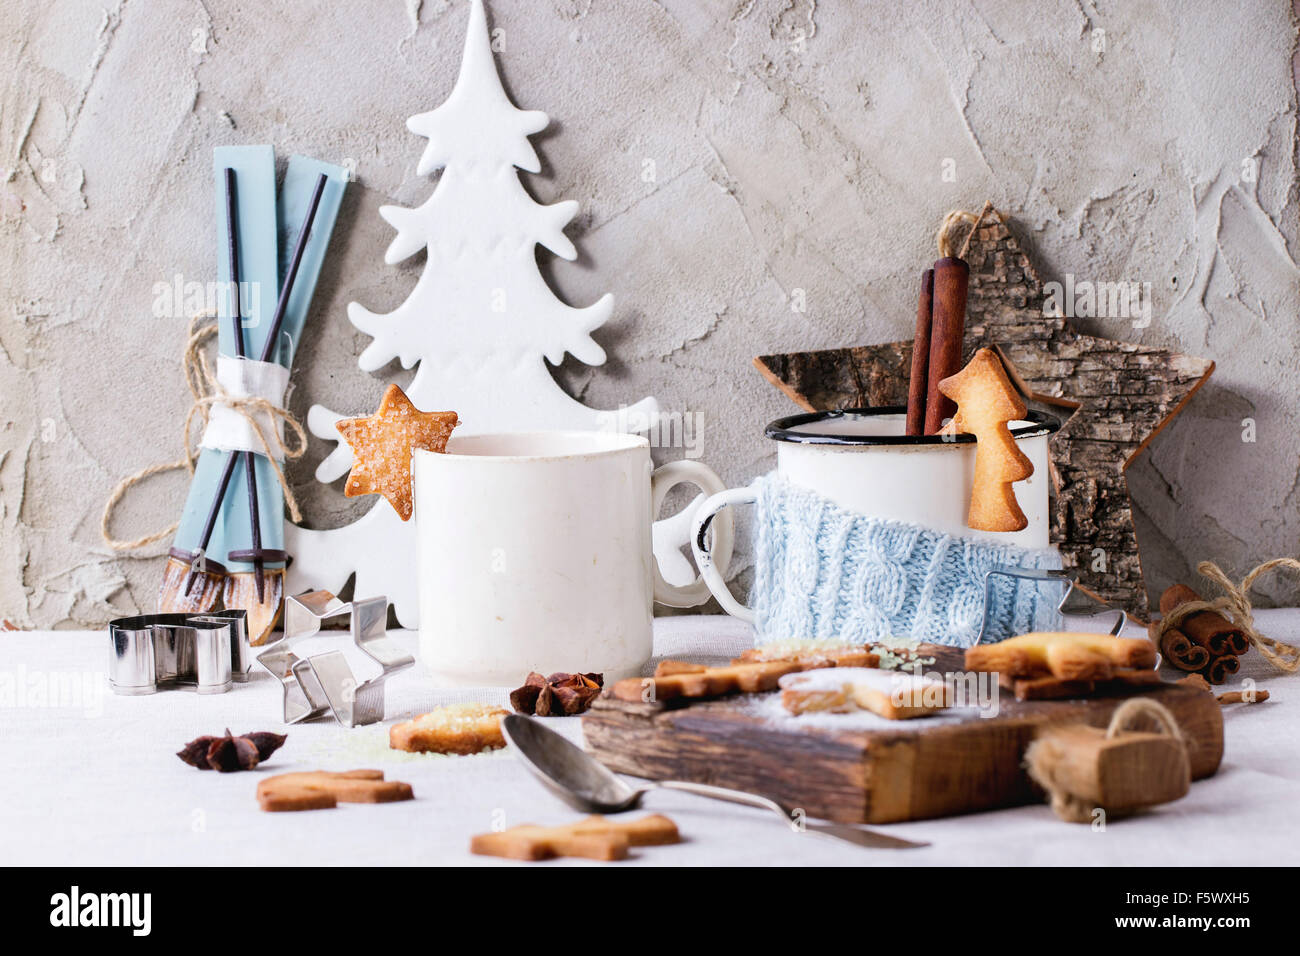 Shortbread galletas de Navidad para CUPS, dos tazas de té caliente y el azúcar en polvo sobre la mesa con mantel blanco con decoración de Navidad Foto de stock